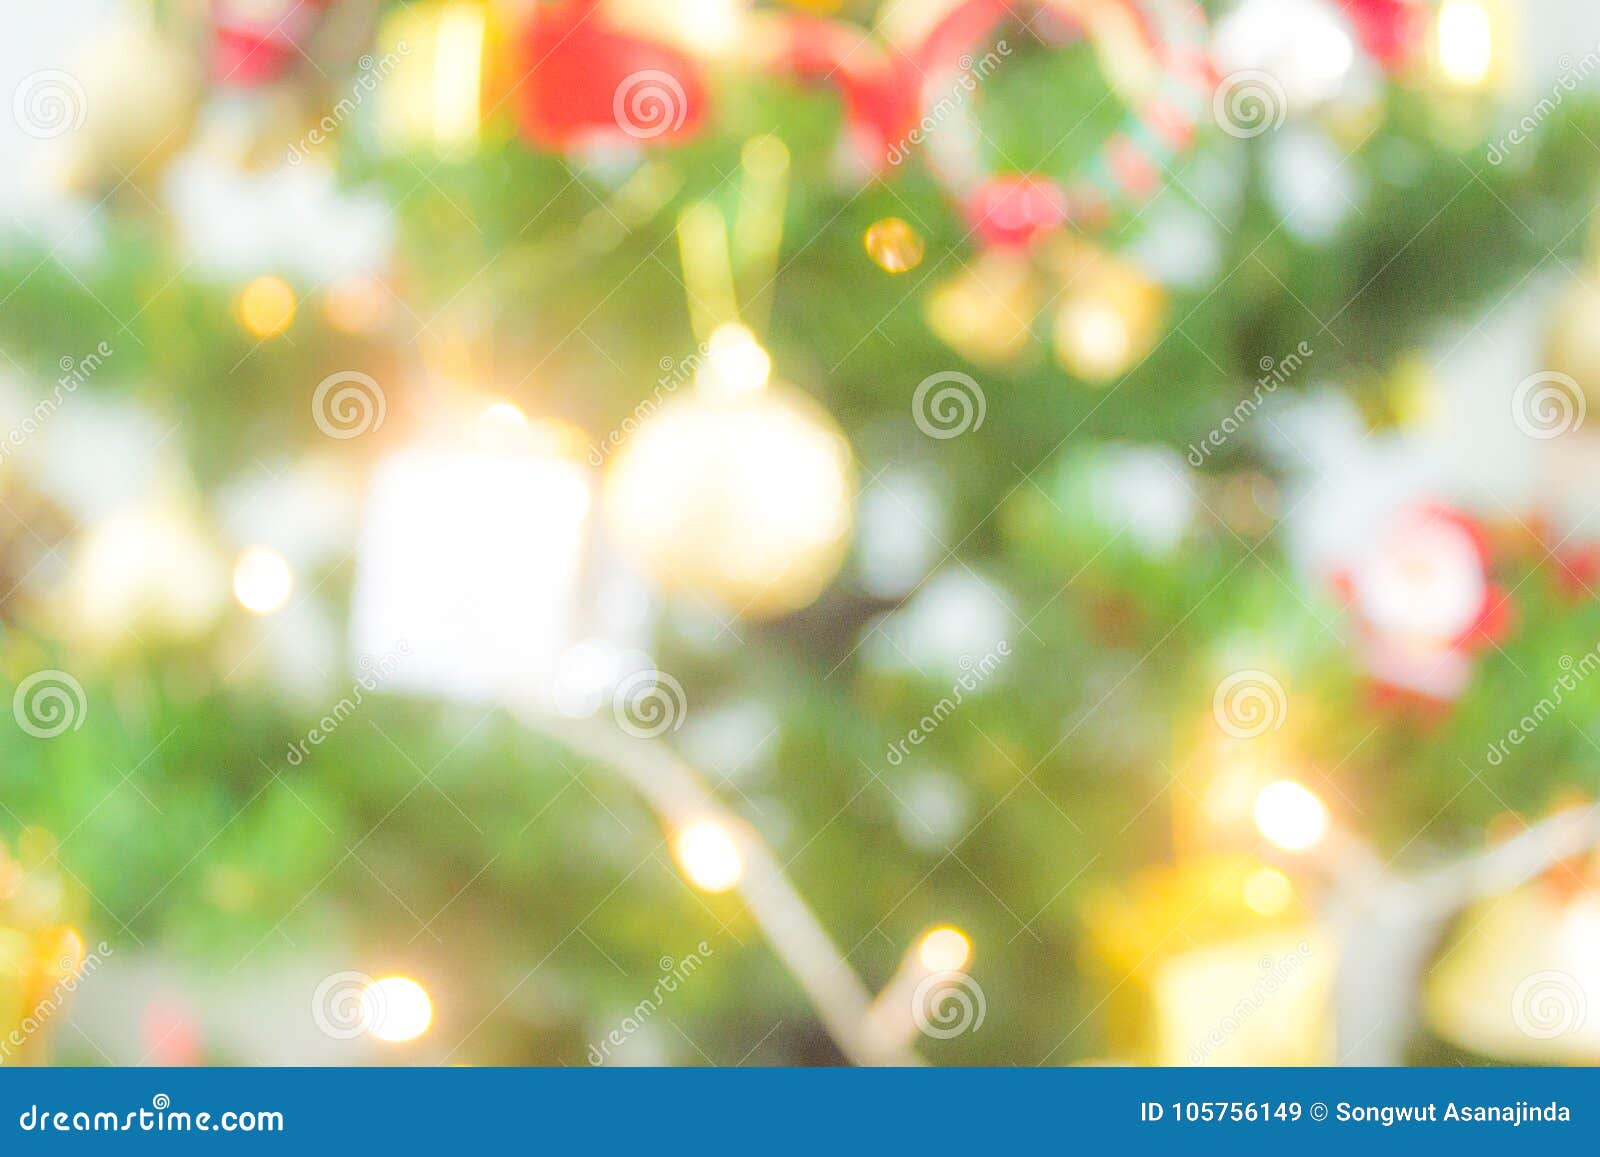 Đã đến lúc trang trí cây thông Giáng Sinh rực rỡ để chuẩn bị cho mùa lễ hội đang đến gần. Hãy cùng xem những hình ảnh đẹp lung linh về cây thông, để thiết kế ra một cây thông hoàn hảo cho mùa Giáng sinh sắp tới. 